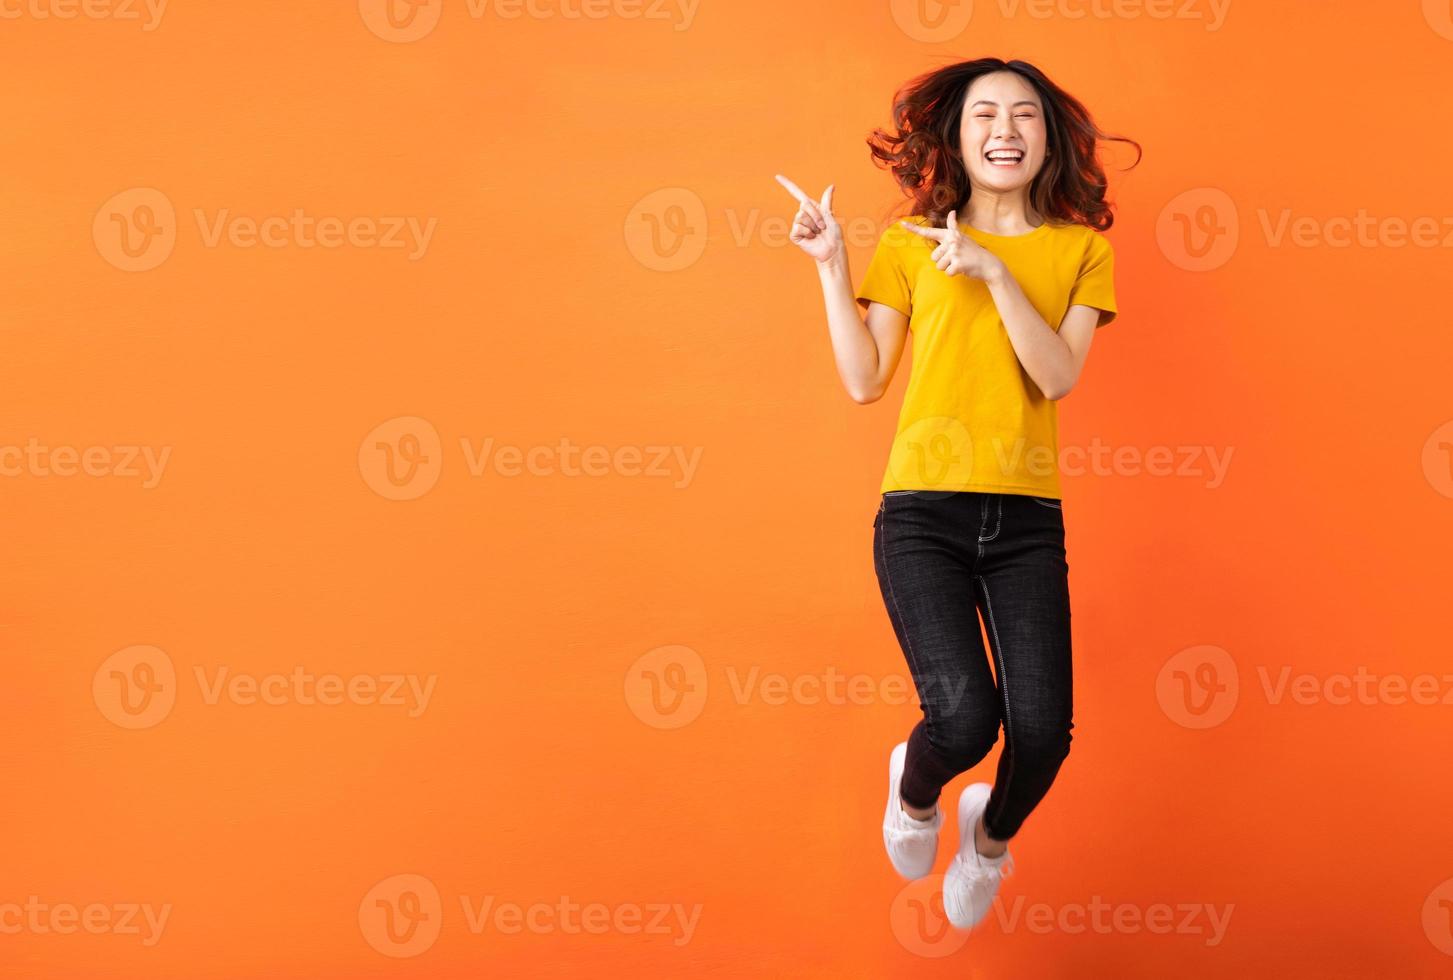 jovem mulher asiática pulando em um fundo laranja foto